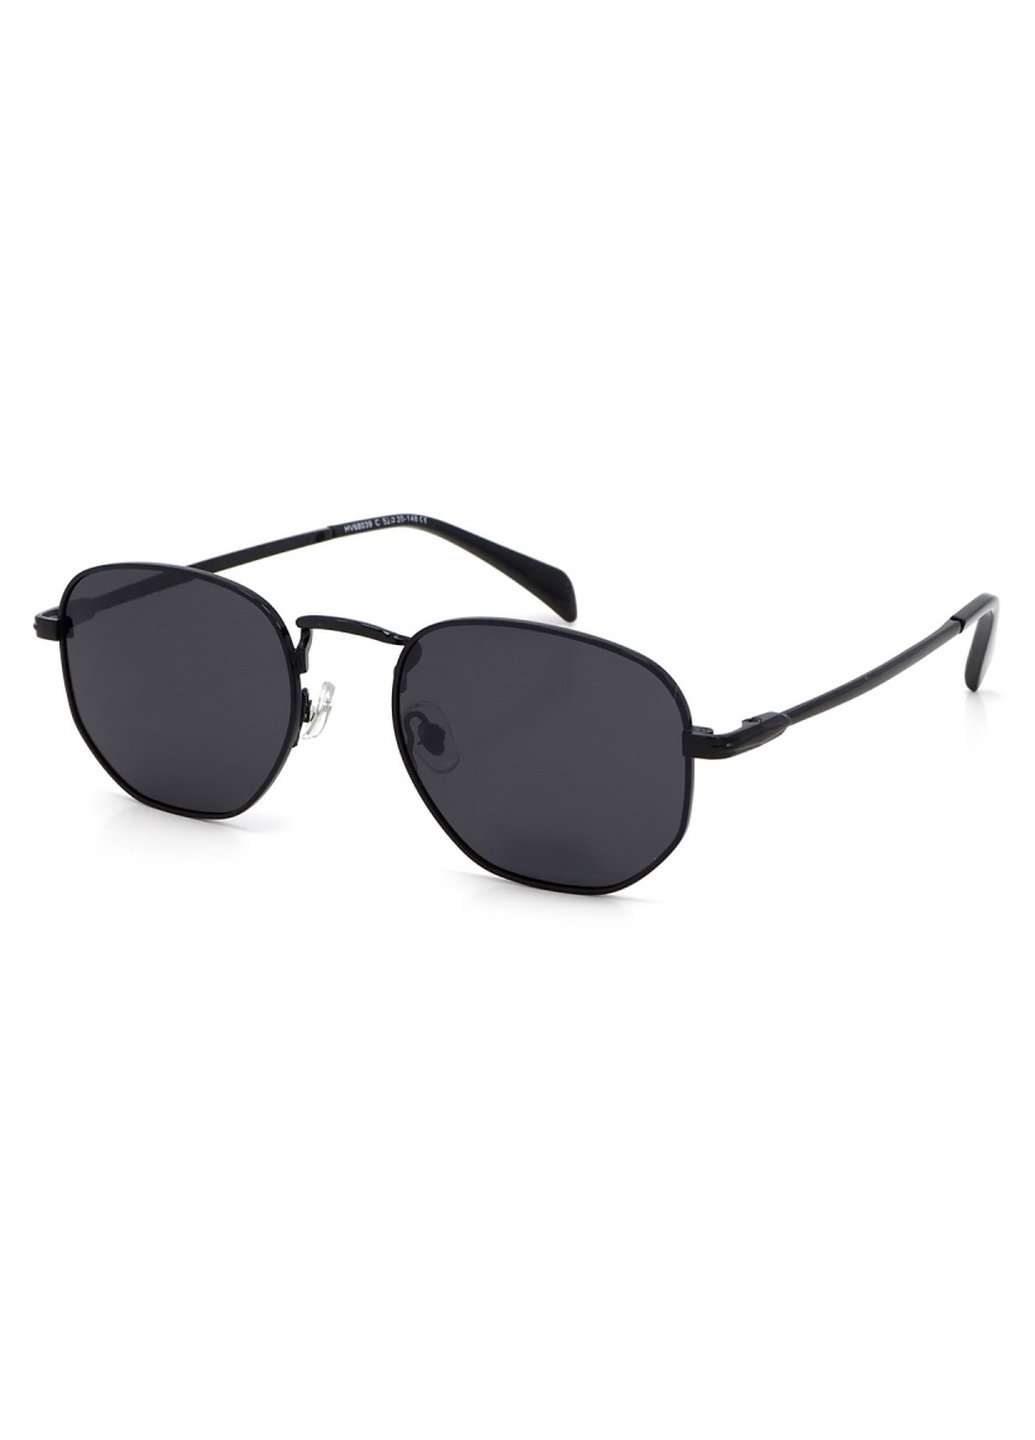 Купить Солнцезащитные очки c поляризацией HAVVS HV68039 170024 - Черный в интернет-магазине